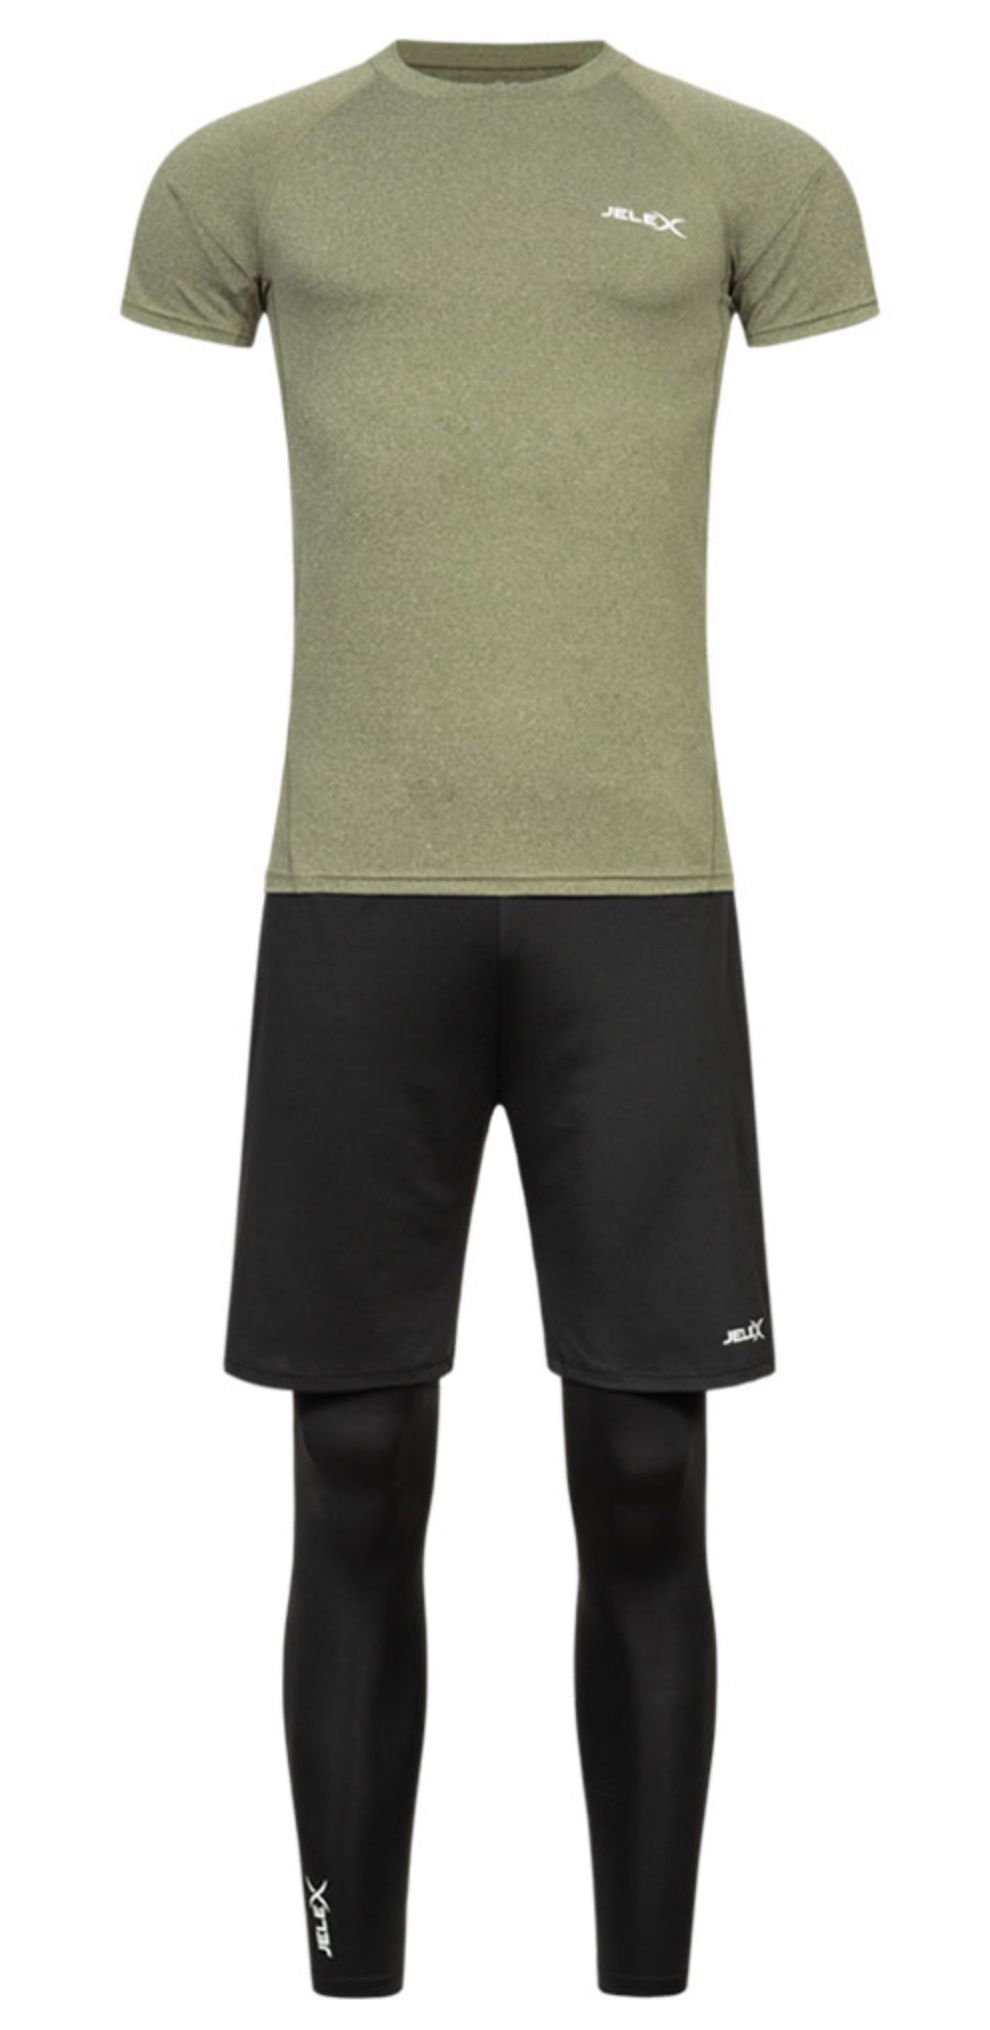 JELEX Sportinator Herren Fitness Set (T Shirt, Shorts, Leggings) für 13,94€ (statt 23€)